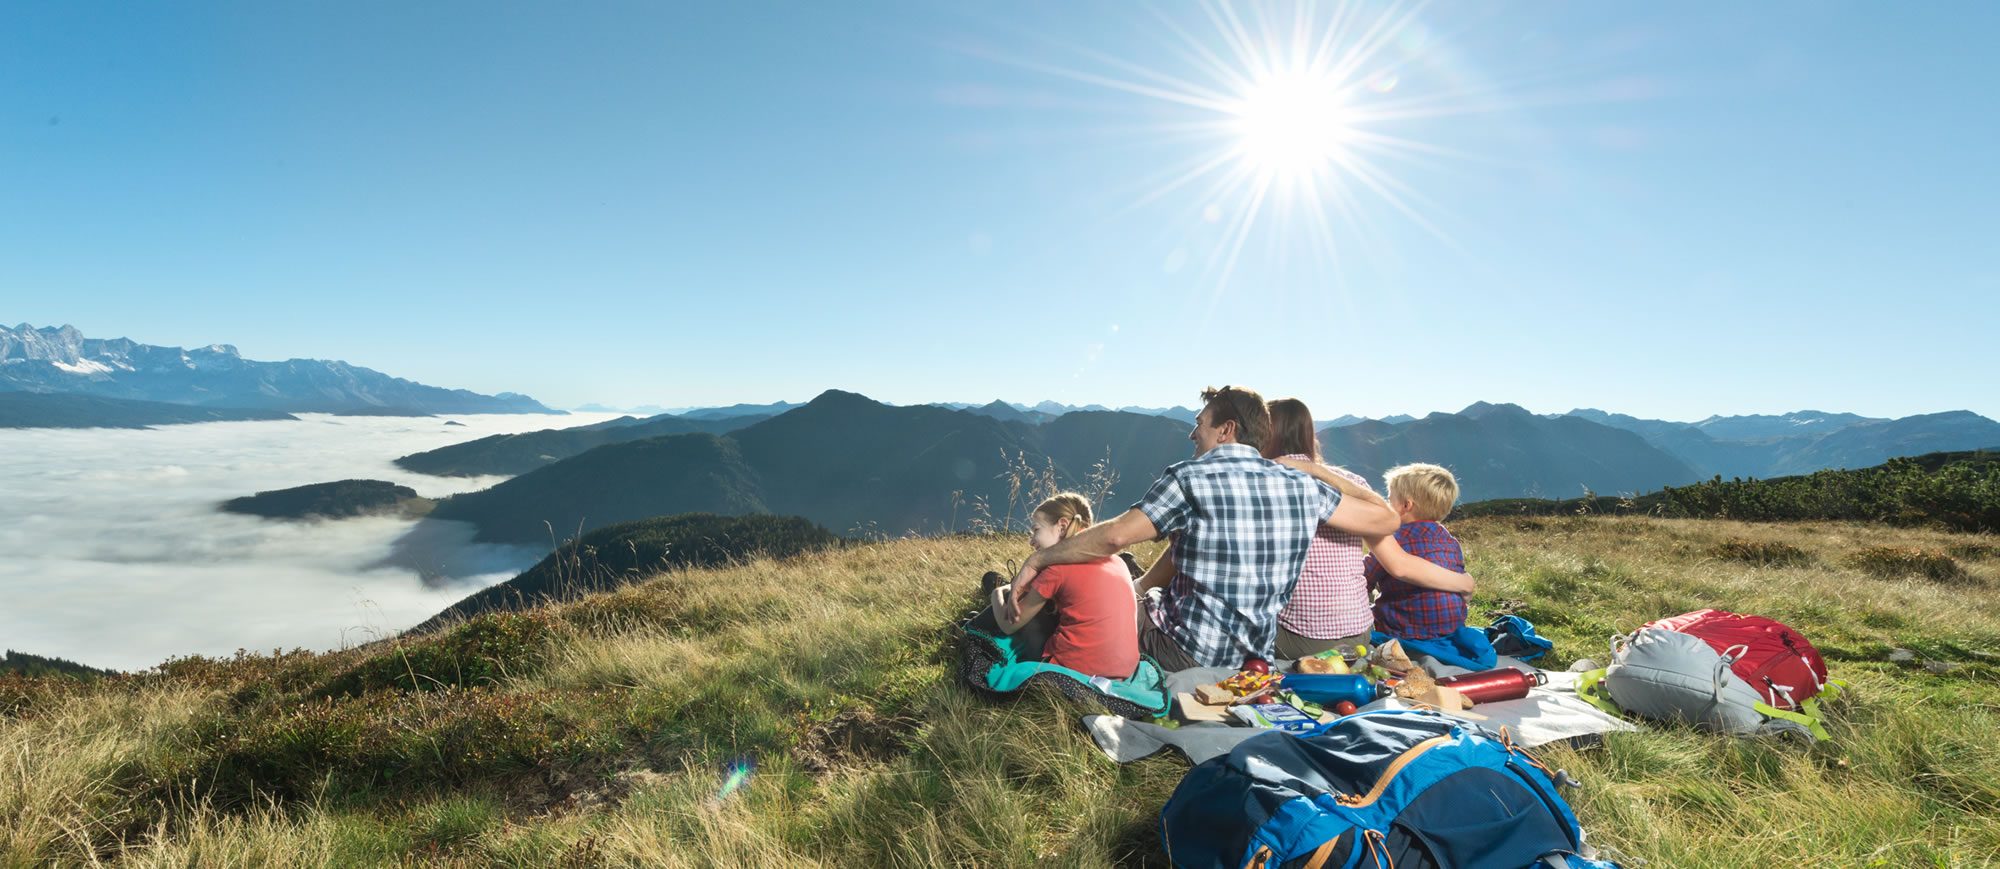 Ausblick auf die Berge im Familienurlaub © Flachau Tourismus